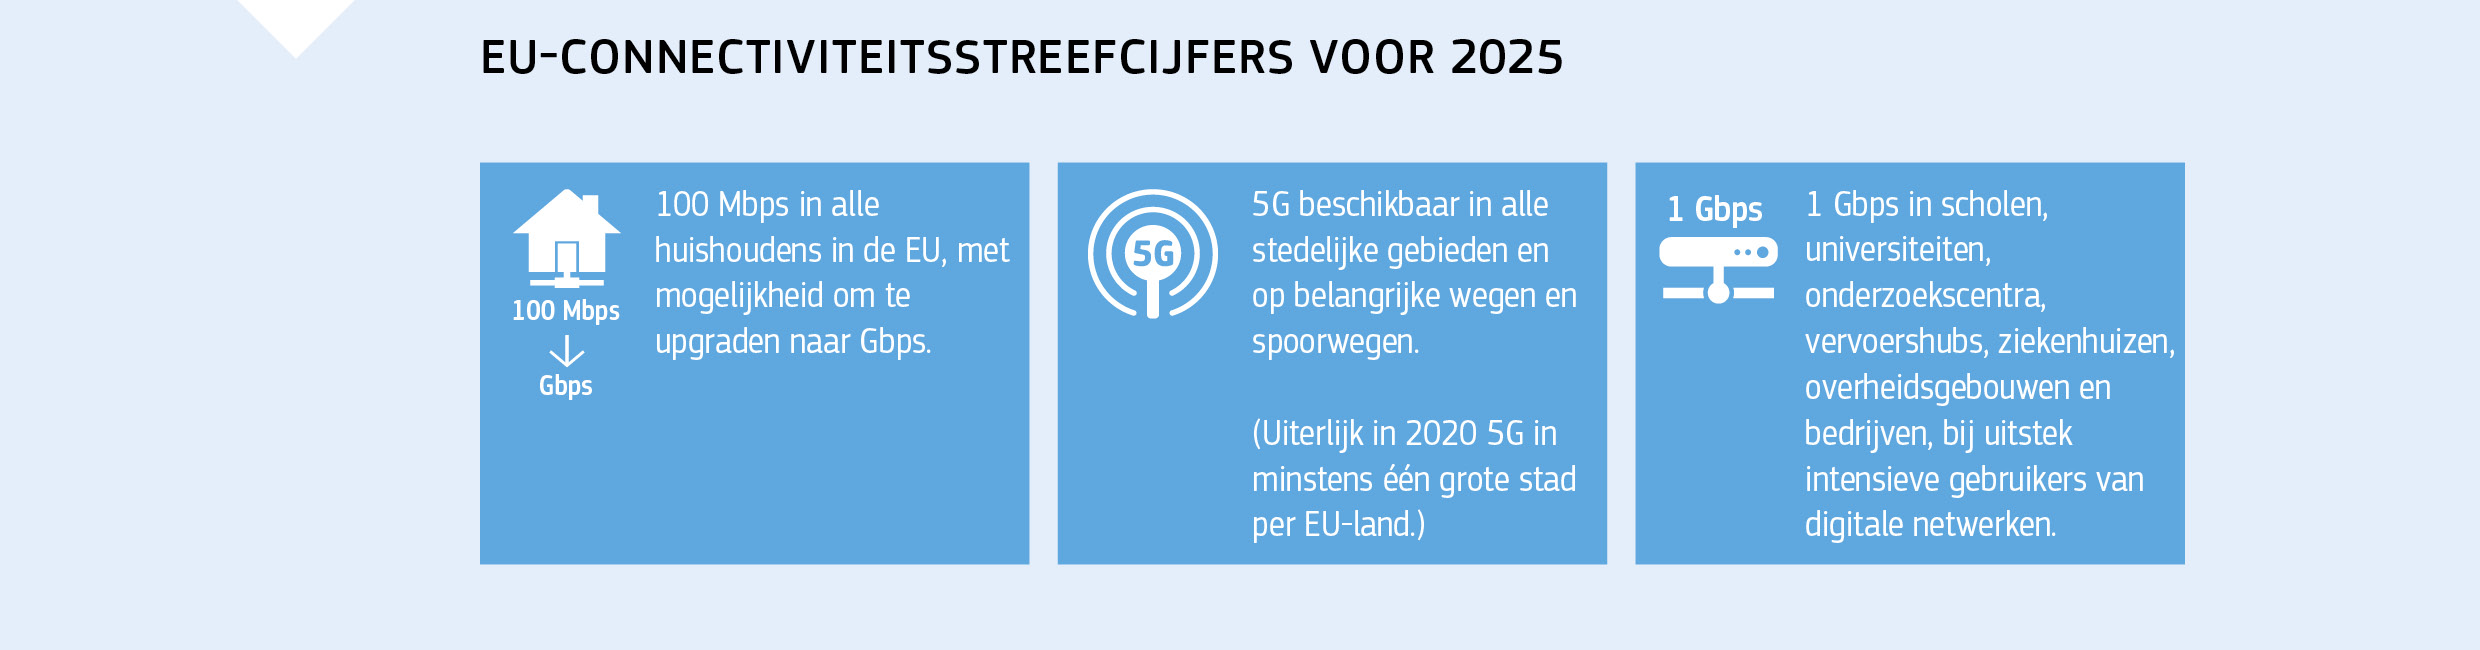 EU-CONNECTIVITEITSSTREEFCIJFERS VOOR 2025